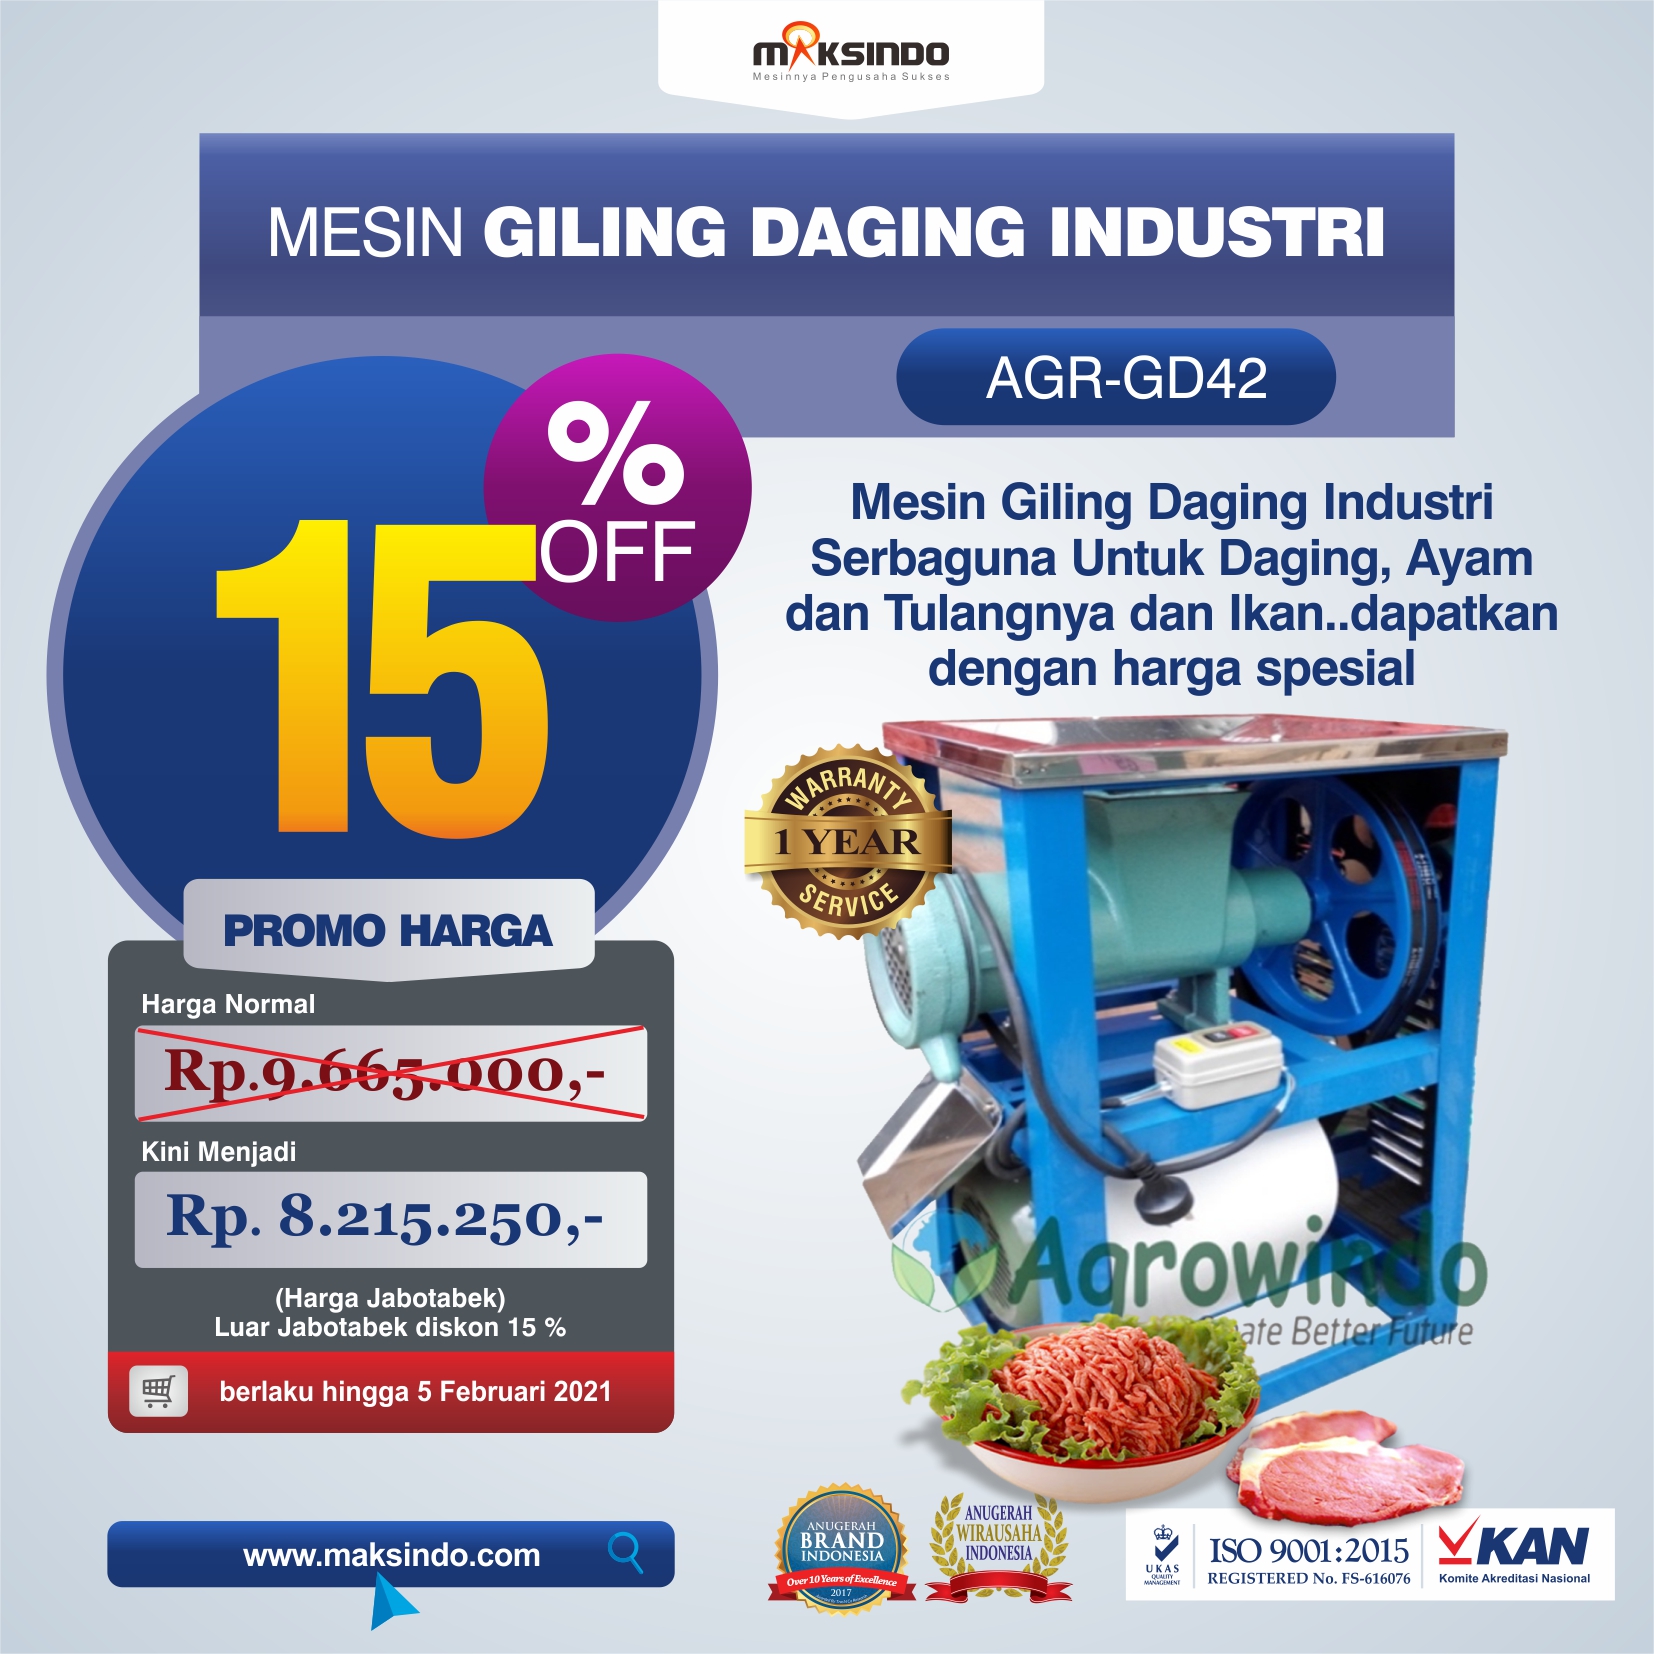 Jual Mesin Giling Daging Industri (AGR-GD42) di Tangerang